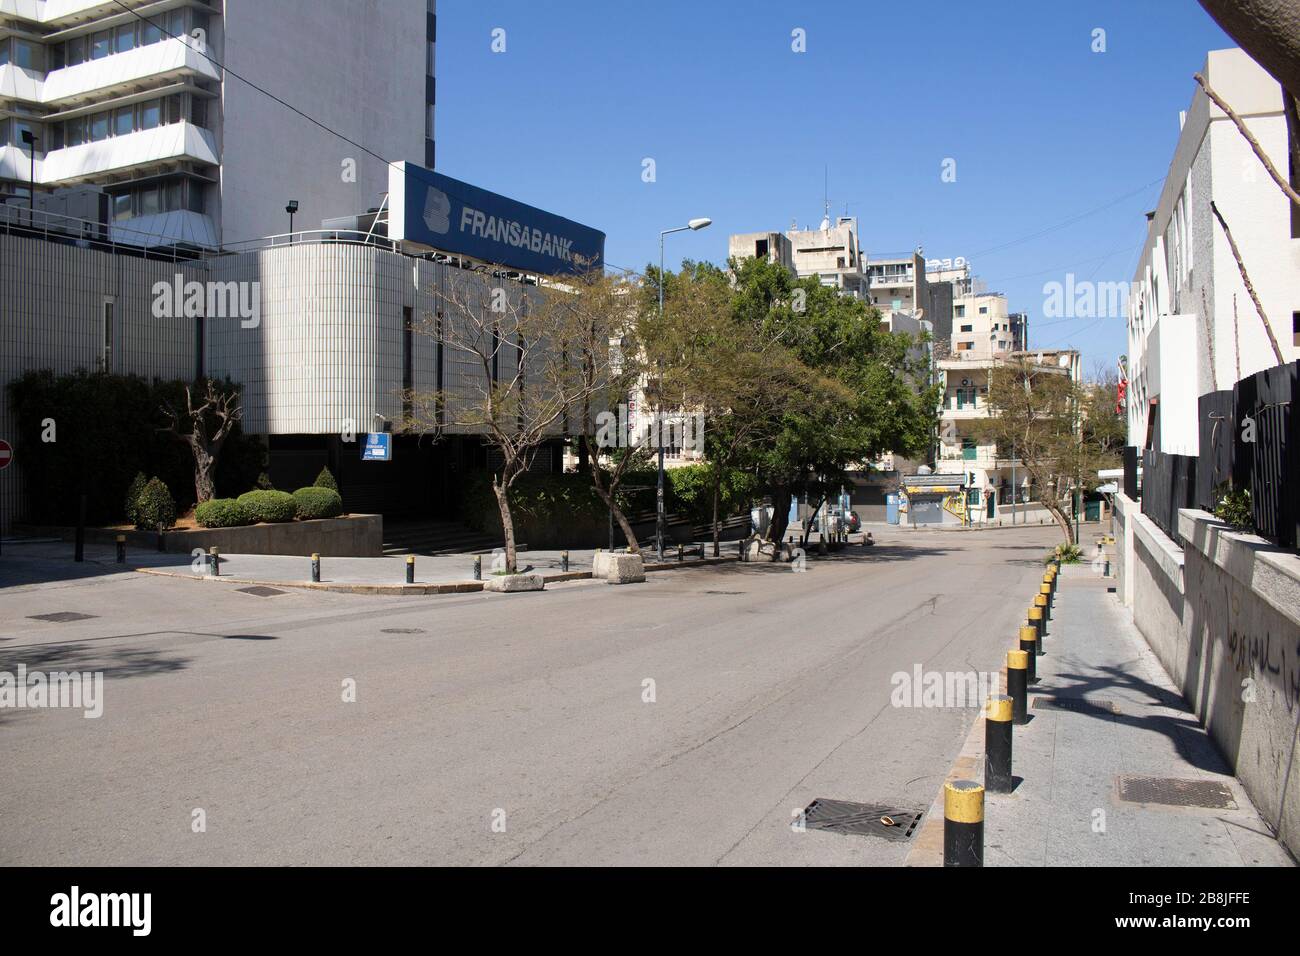 Beyrouth, Liban. 22 mars 2020. Les rues de Beyrouth vides alors que le gouvernement libanais déclare un état d'urgence demandant aux gens de rester à la maison de l'art de lutter contre la maladie du coronavirus COVID-19 crédit: amer ghazzal/Alay Live News Banque D'Images